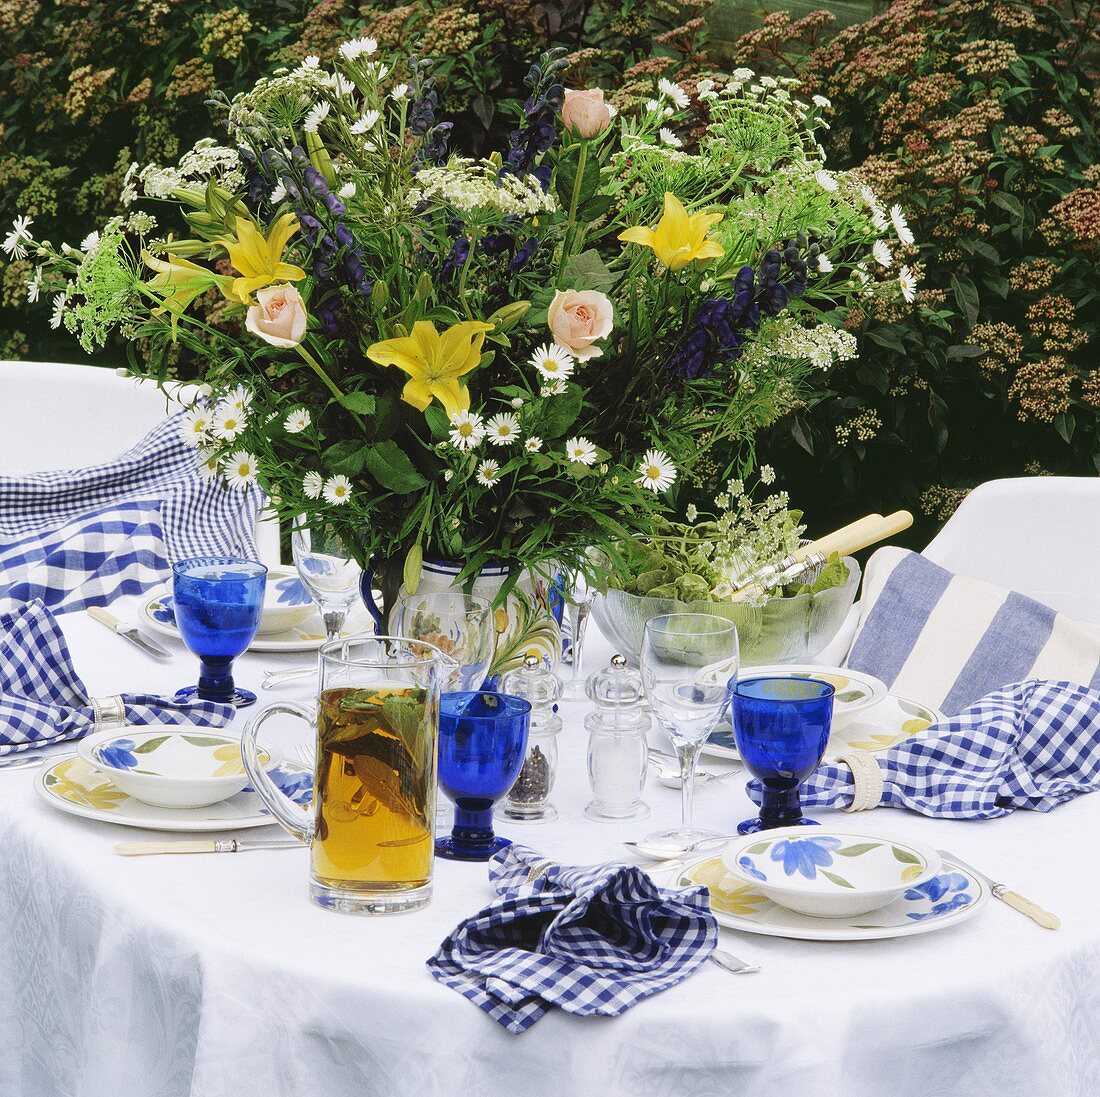 Sommerlicher Blumenstrauss auf weiss-blau gedecktem Tisch